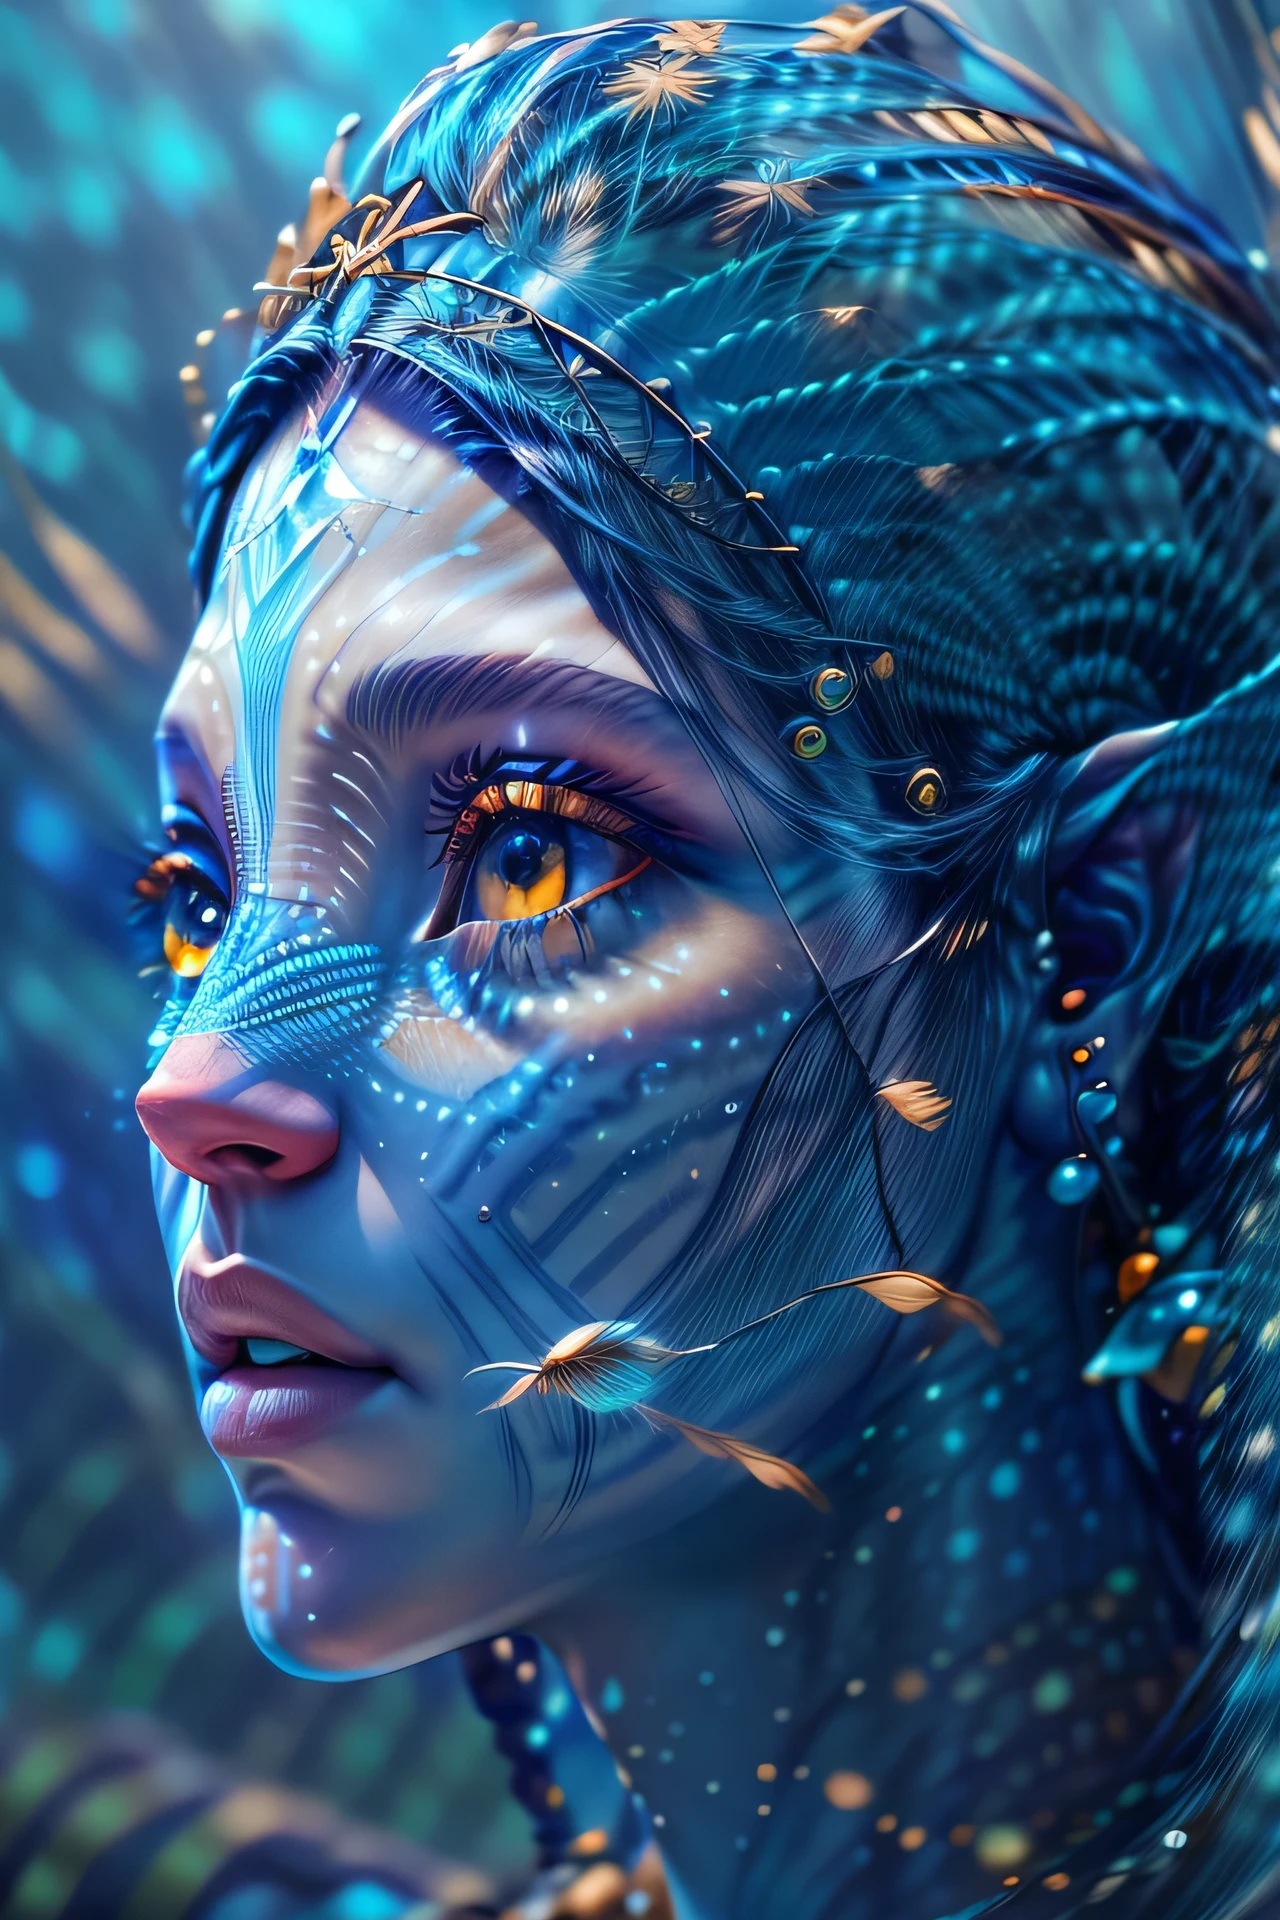 Fotografía de moda retrato de avatar humano azul., en el mar azul con peces, representación 3d, cgi, simétrico, renderizado de octanaje, 35mm, bokeh, 9:16, (detalles intrincados:1.12), HDR, (detalles intrincados, hiperdetallado:1.15), (textura natural de la piel, hyperrealism, Luz tenue, afilado:1.2)
